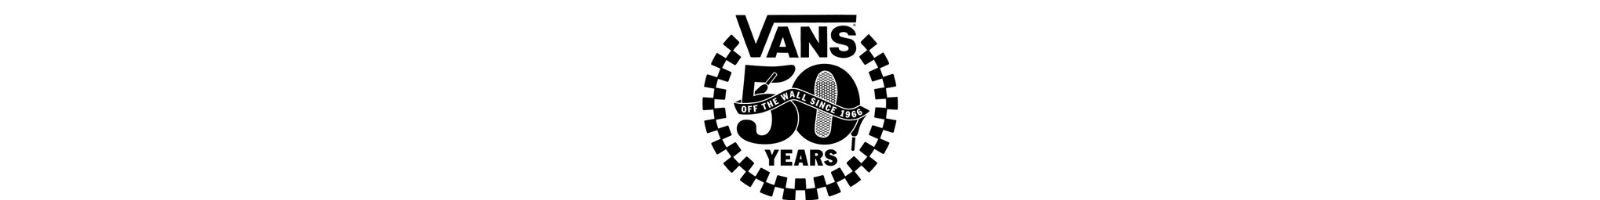 Vans từ 1966